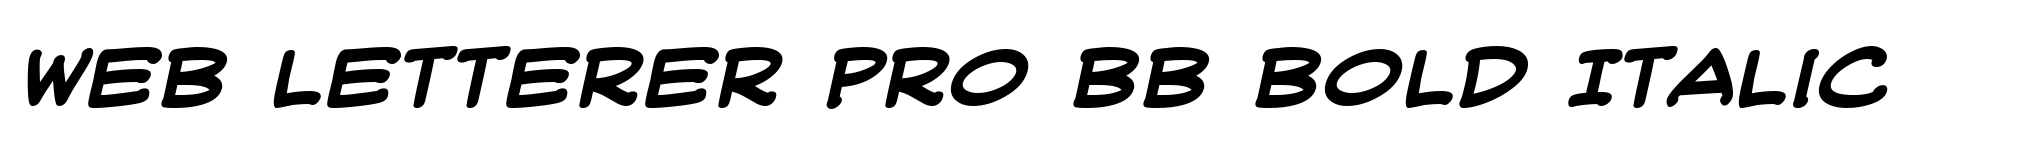 Web Letterer Pro BB Bold Italic image